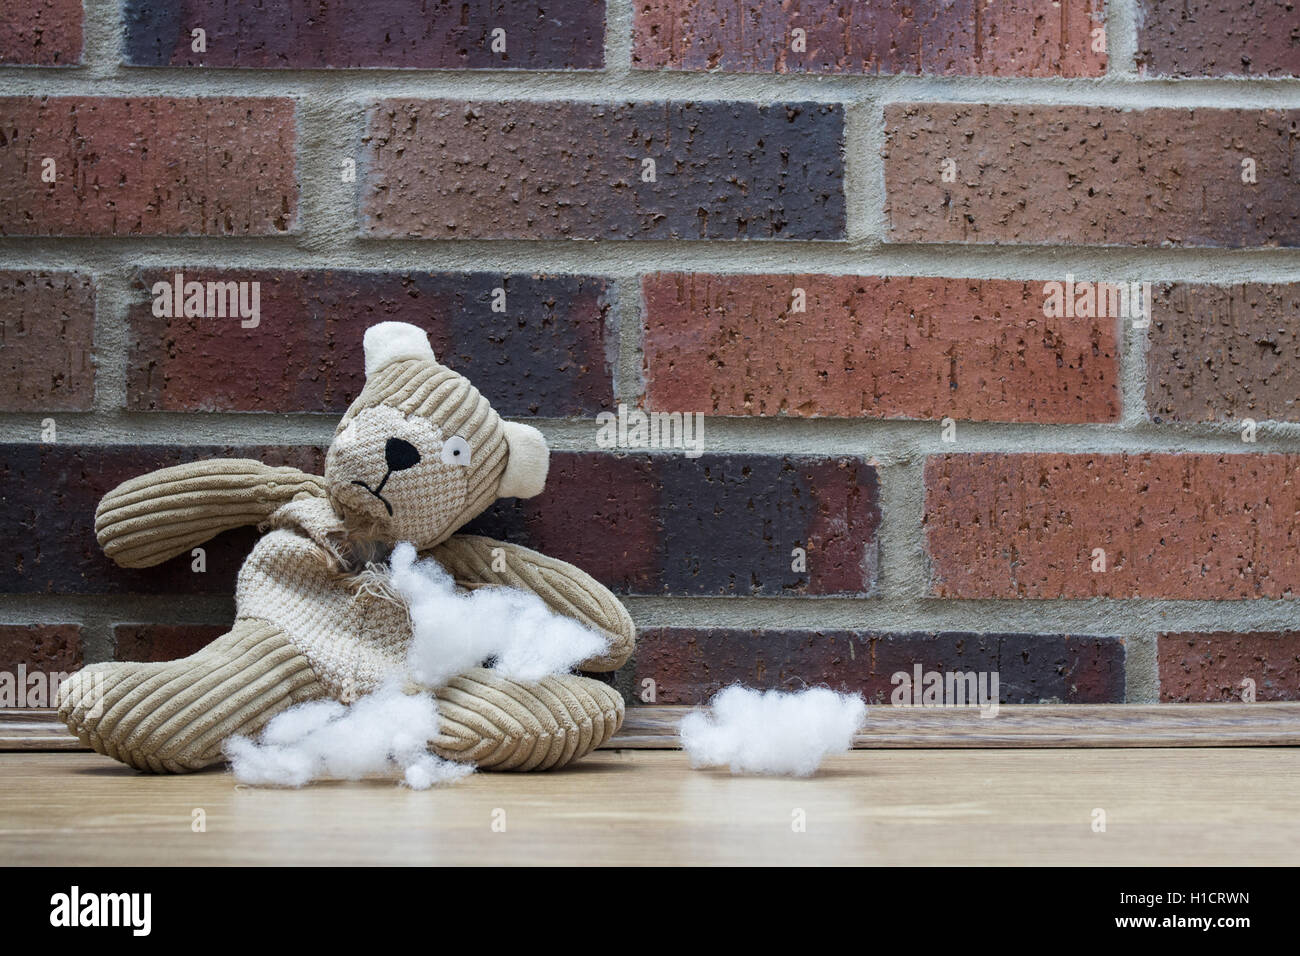 stuffing a teddy bear